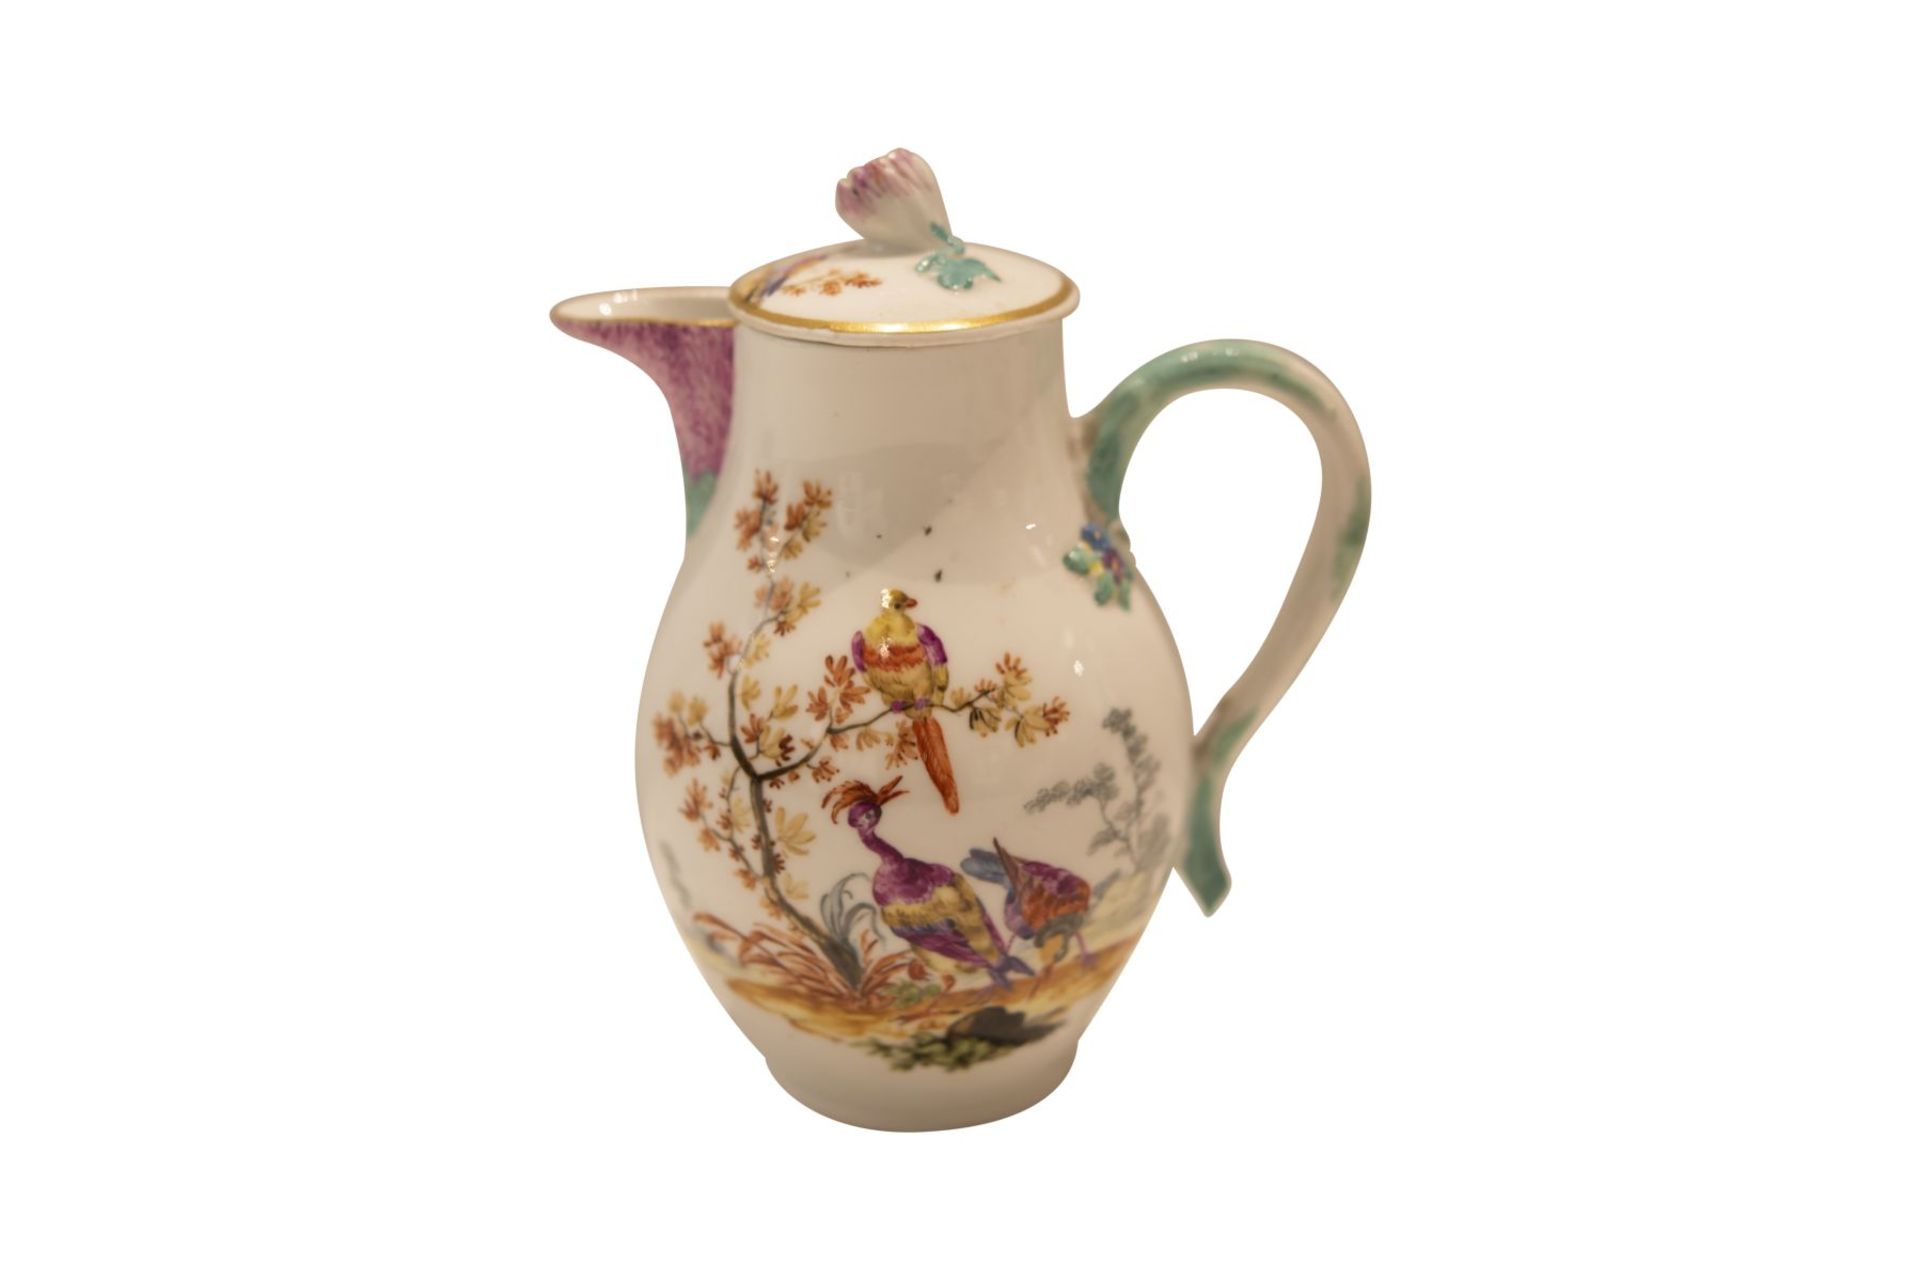 9 piece porcelain service Meissen around 1763 - Image 6 of 12